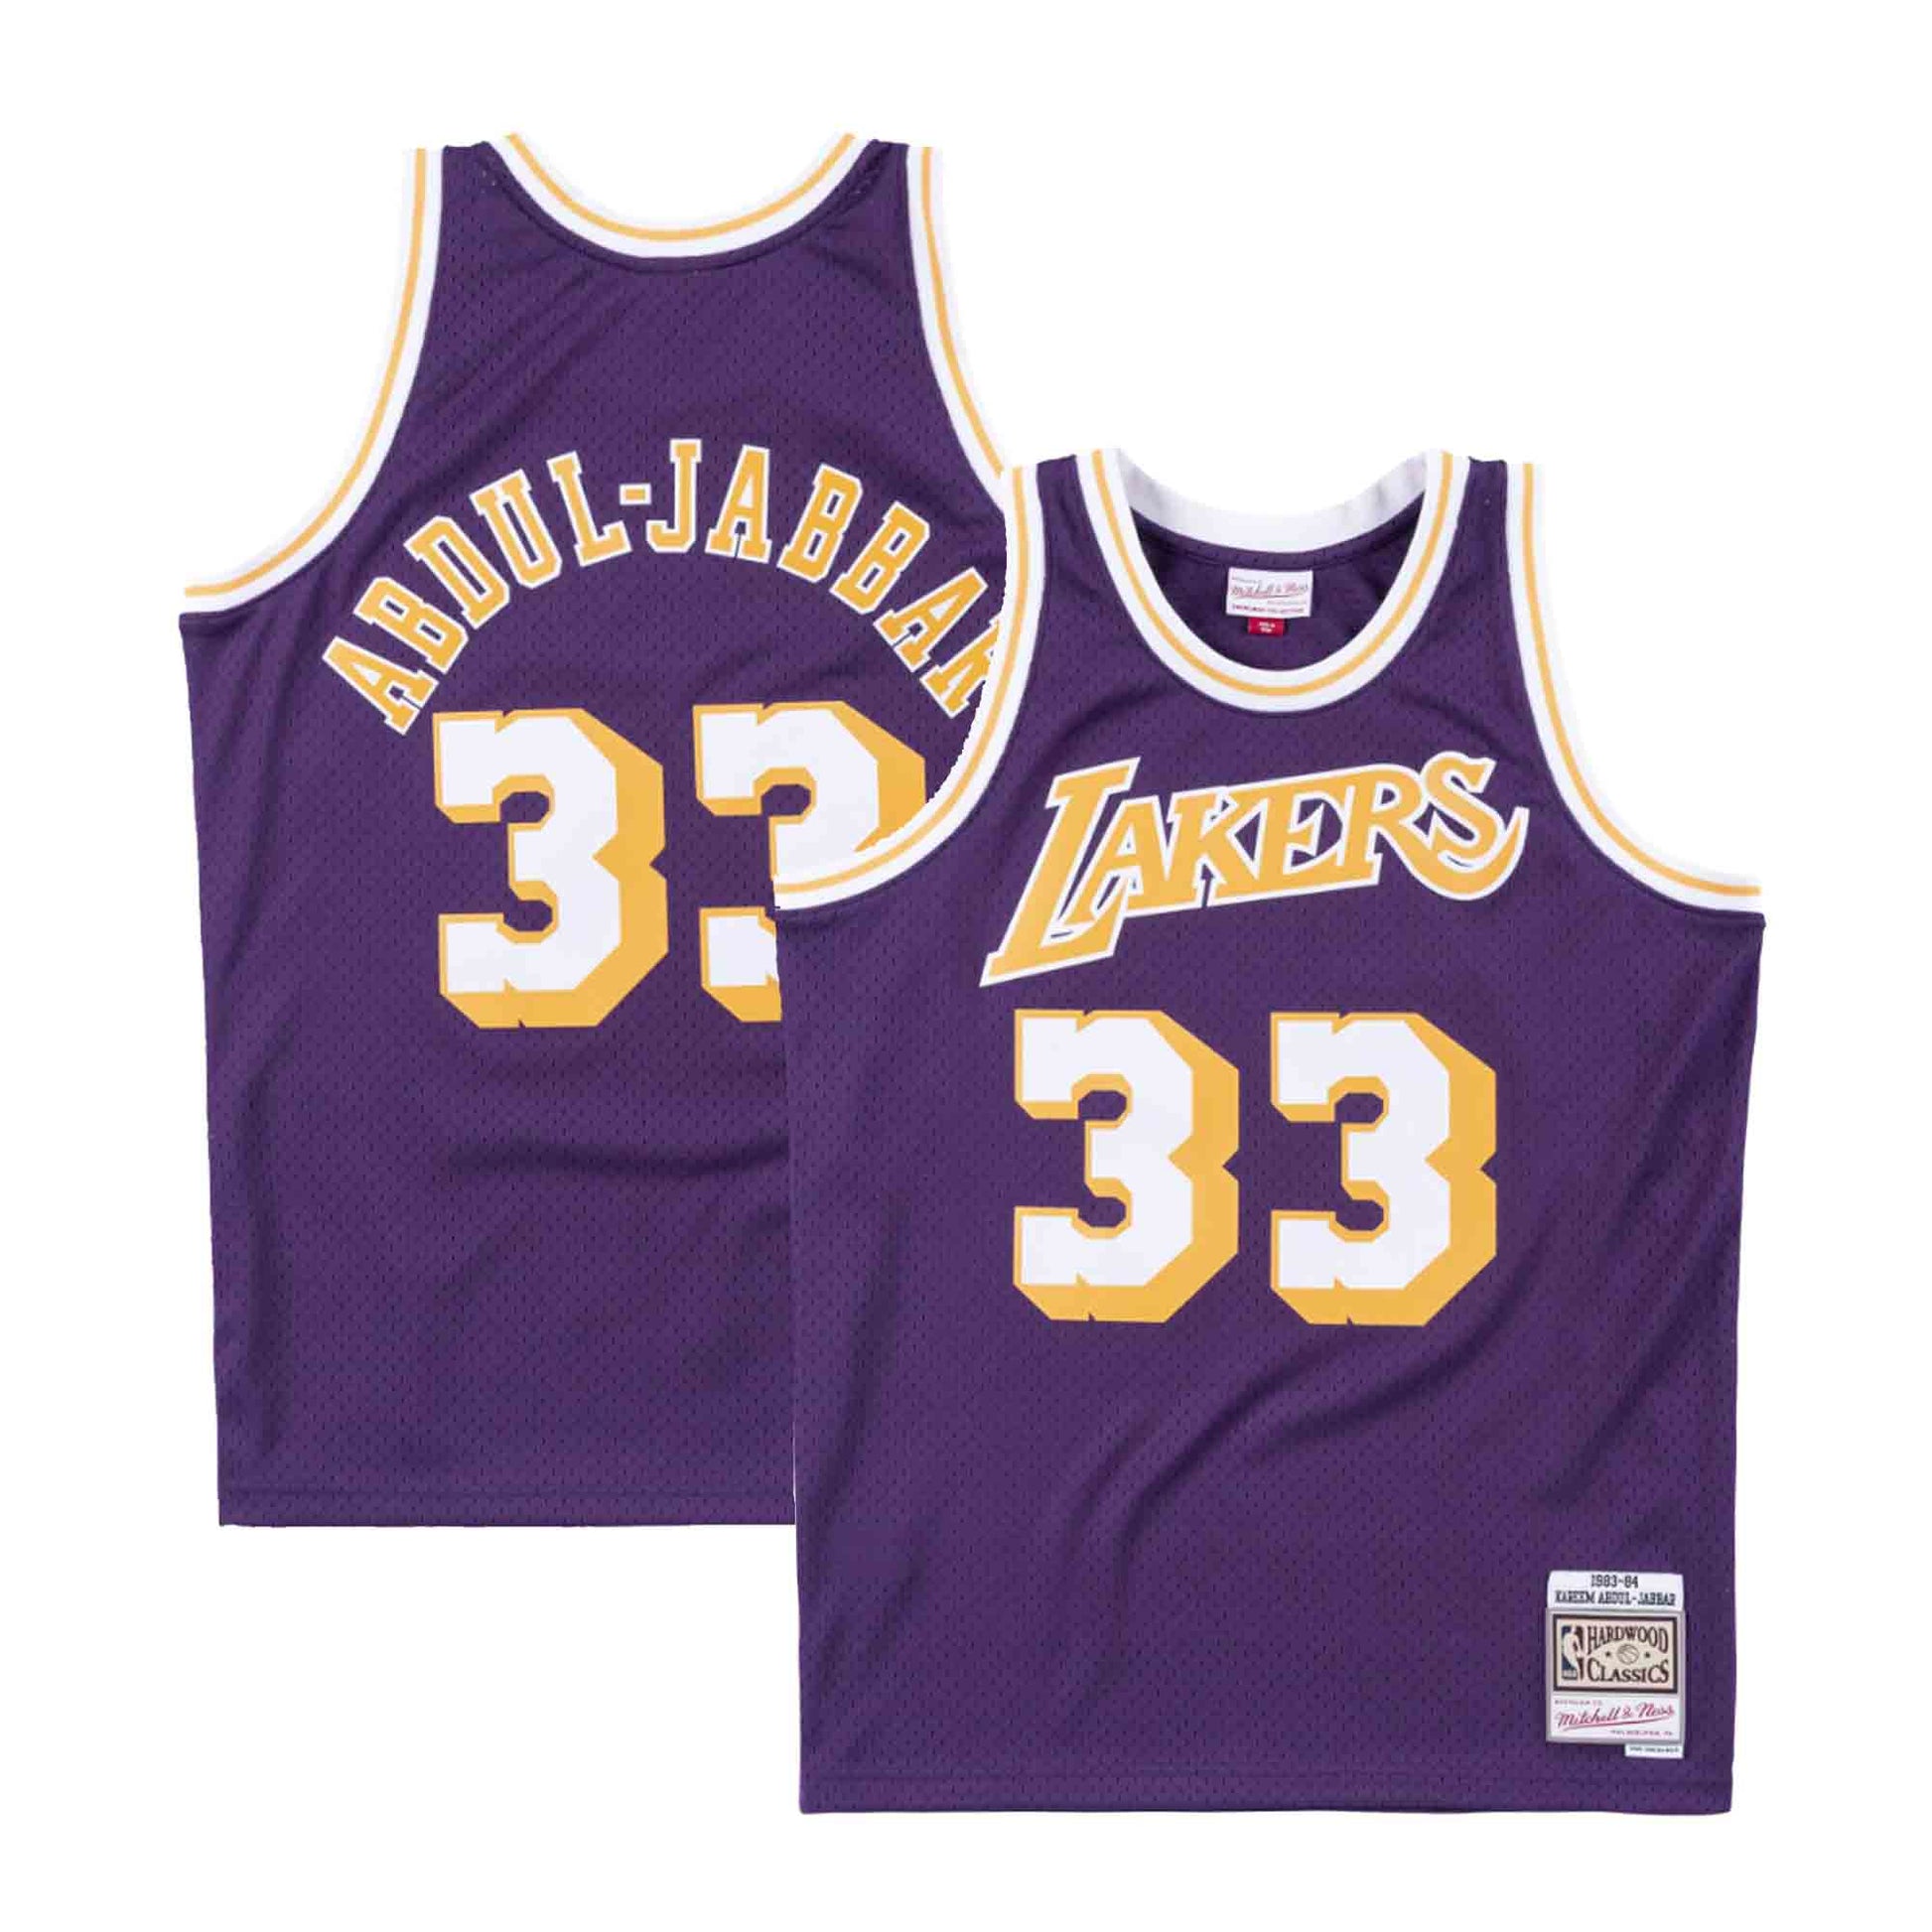  Mitchell & Ness NBA Swingman Alternate Jersey